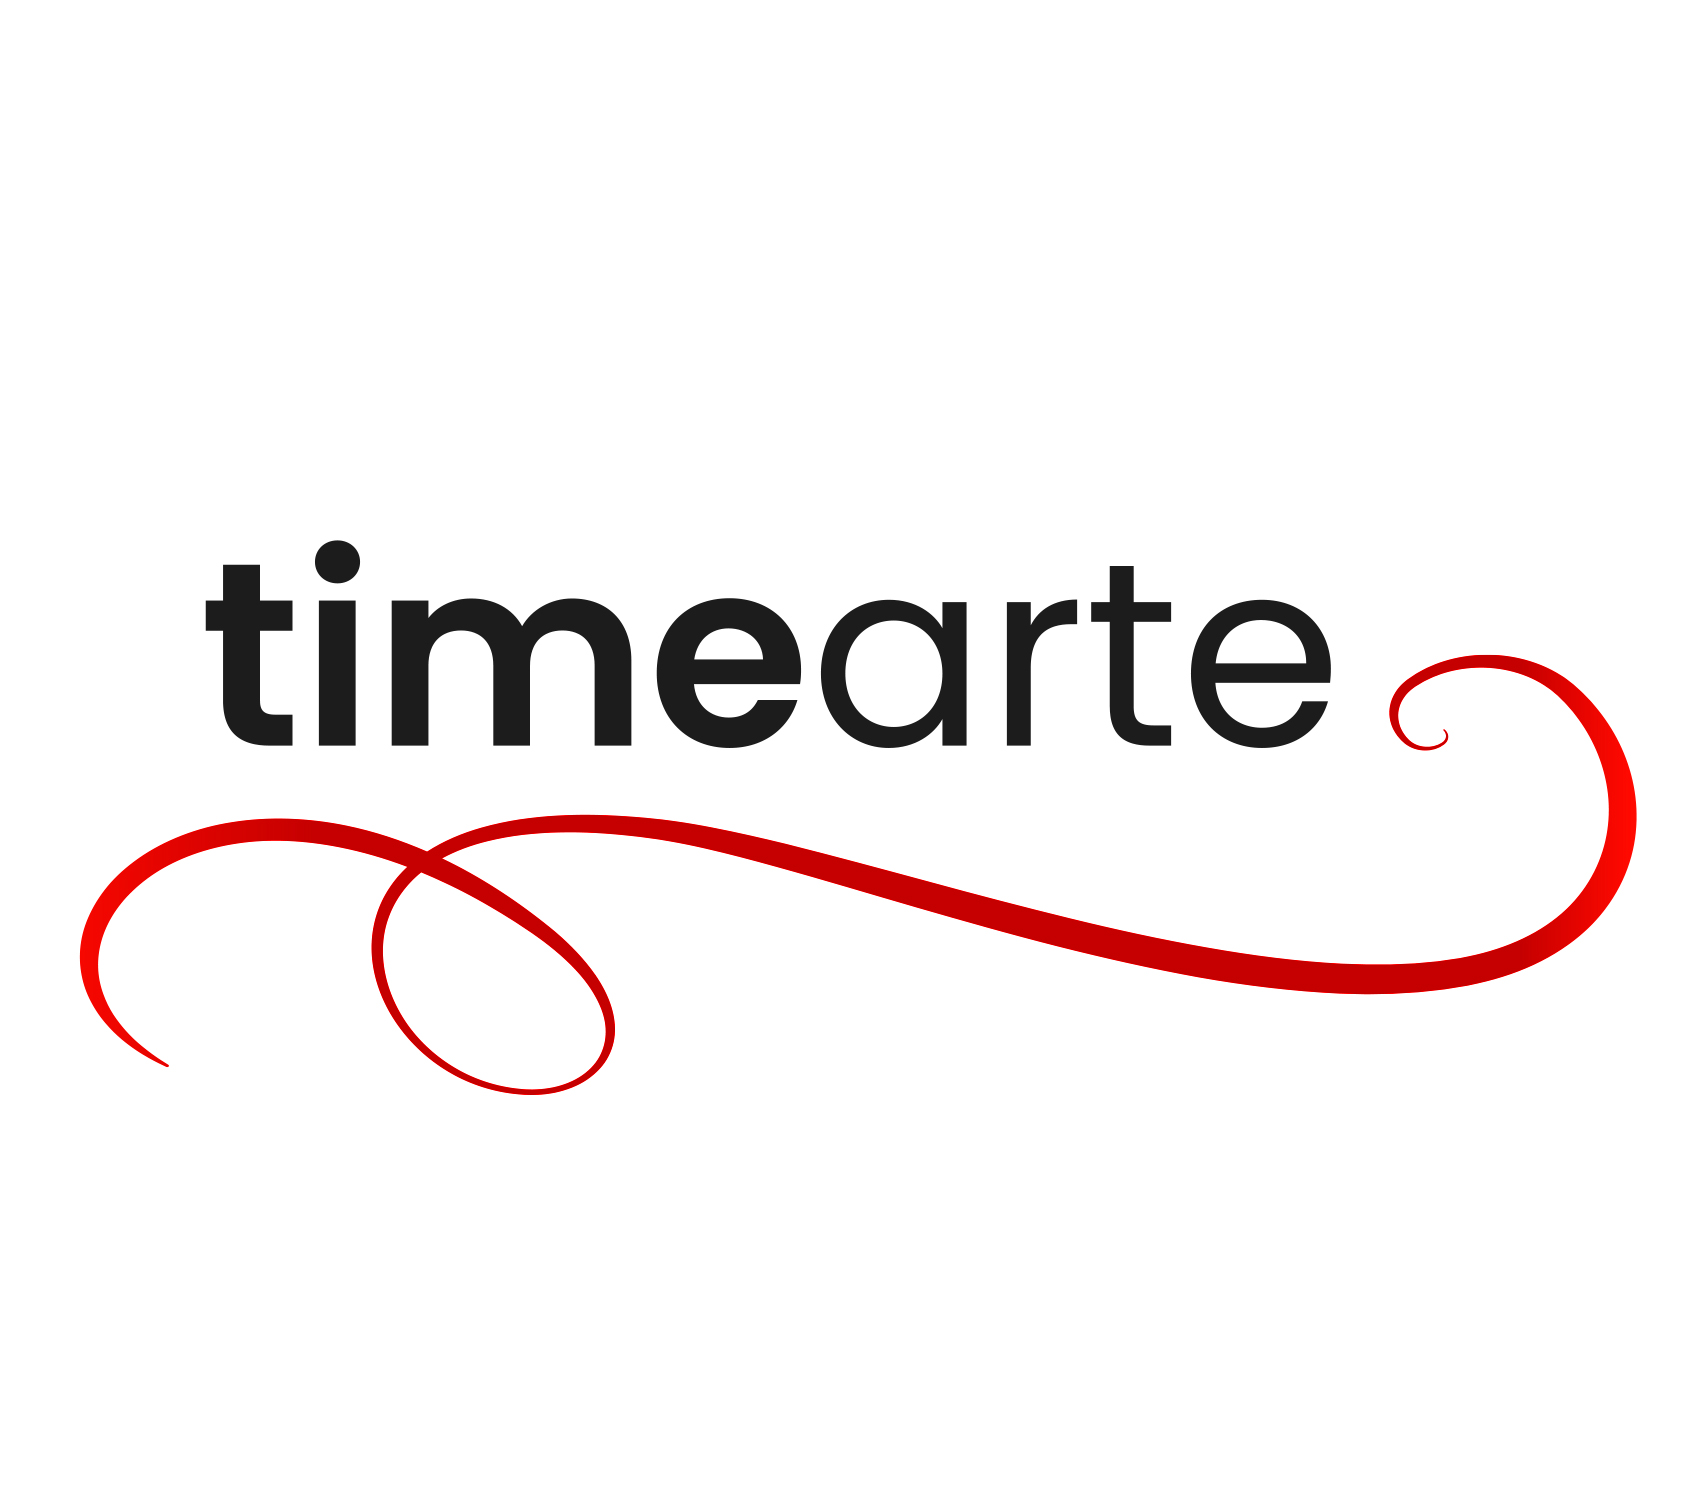 TimeArte